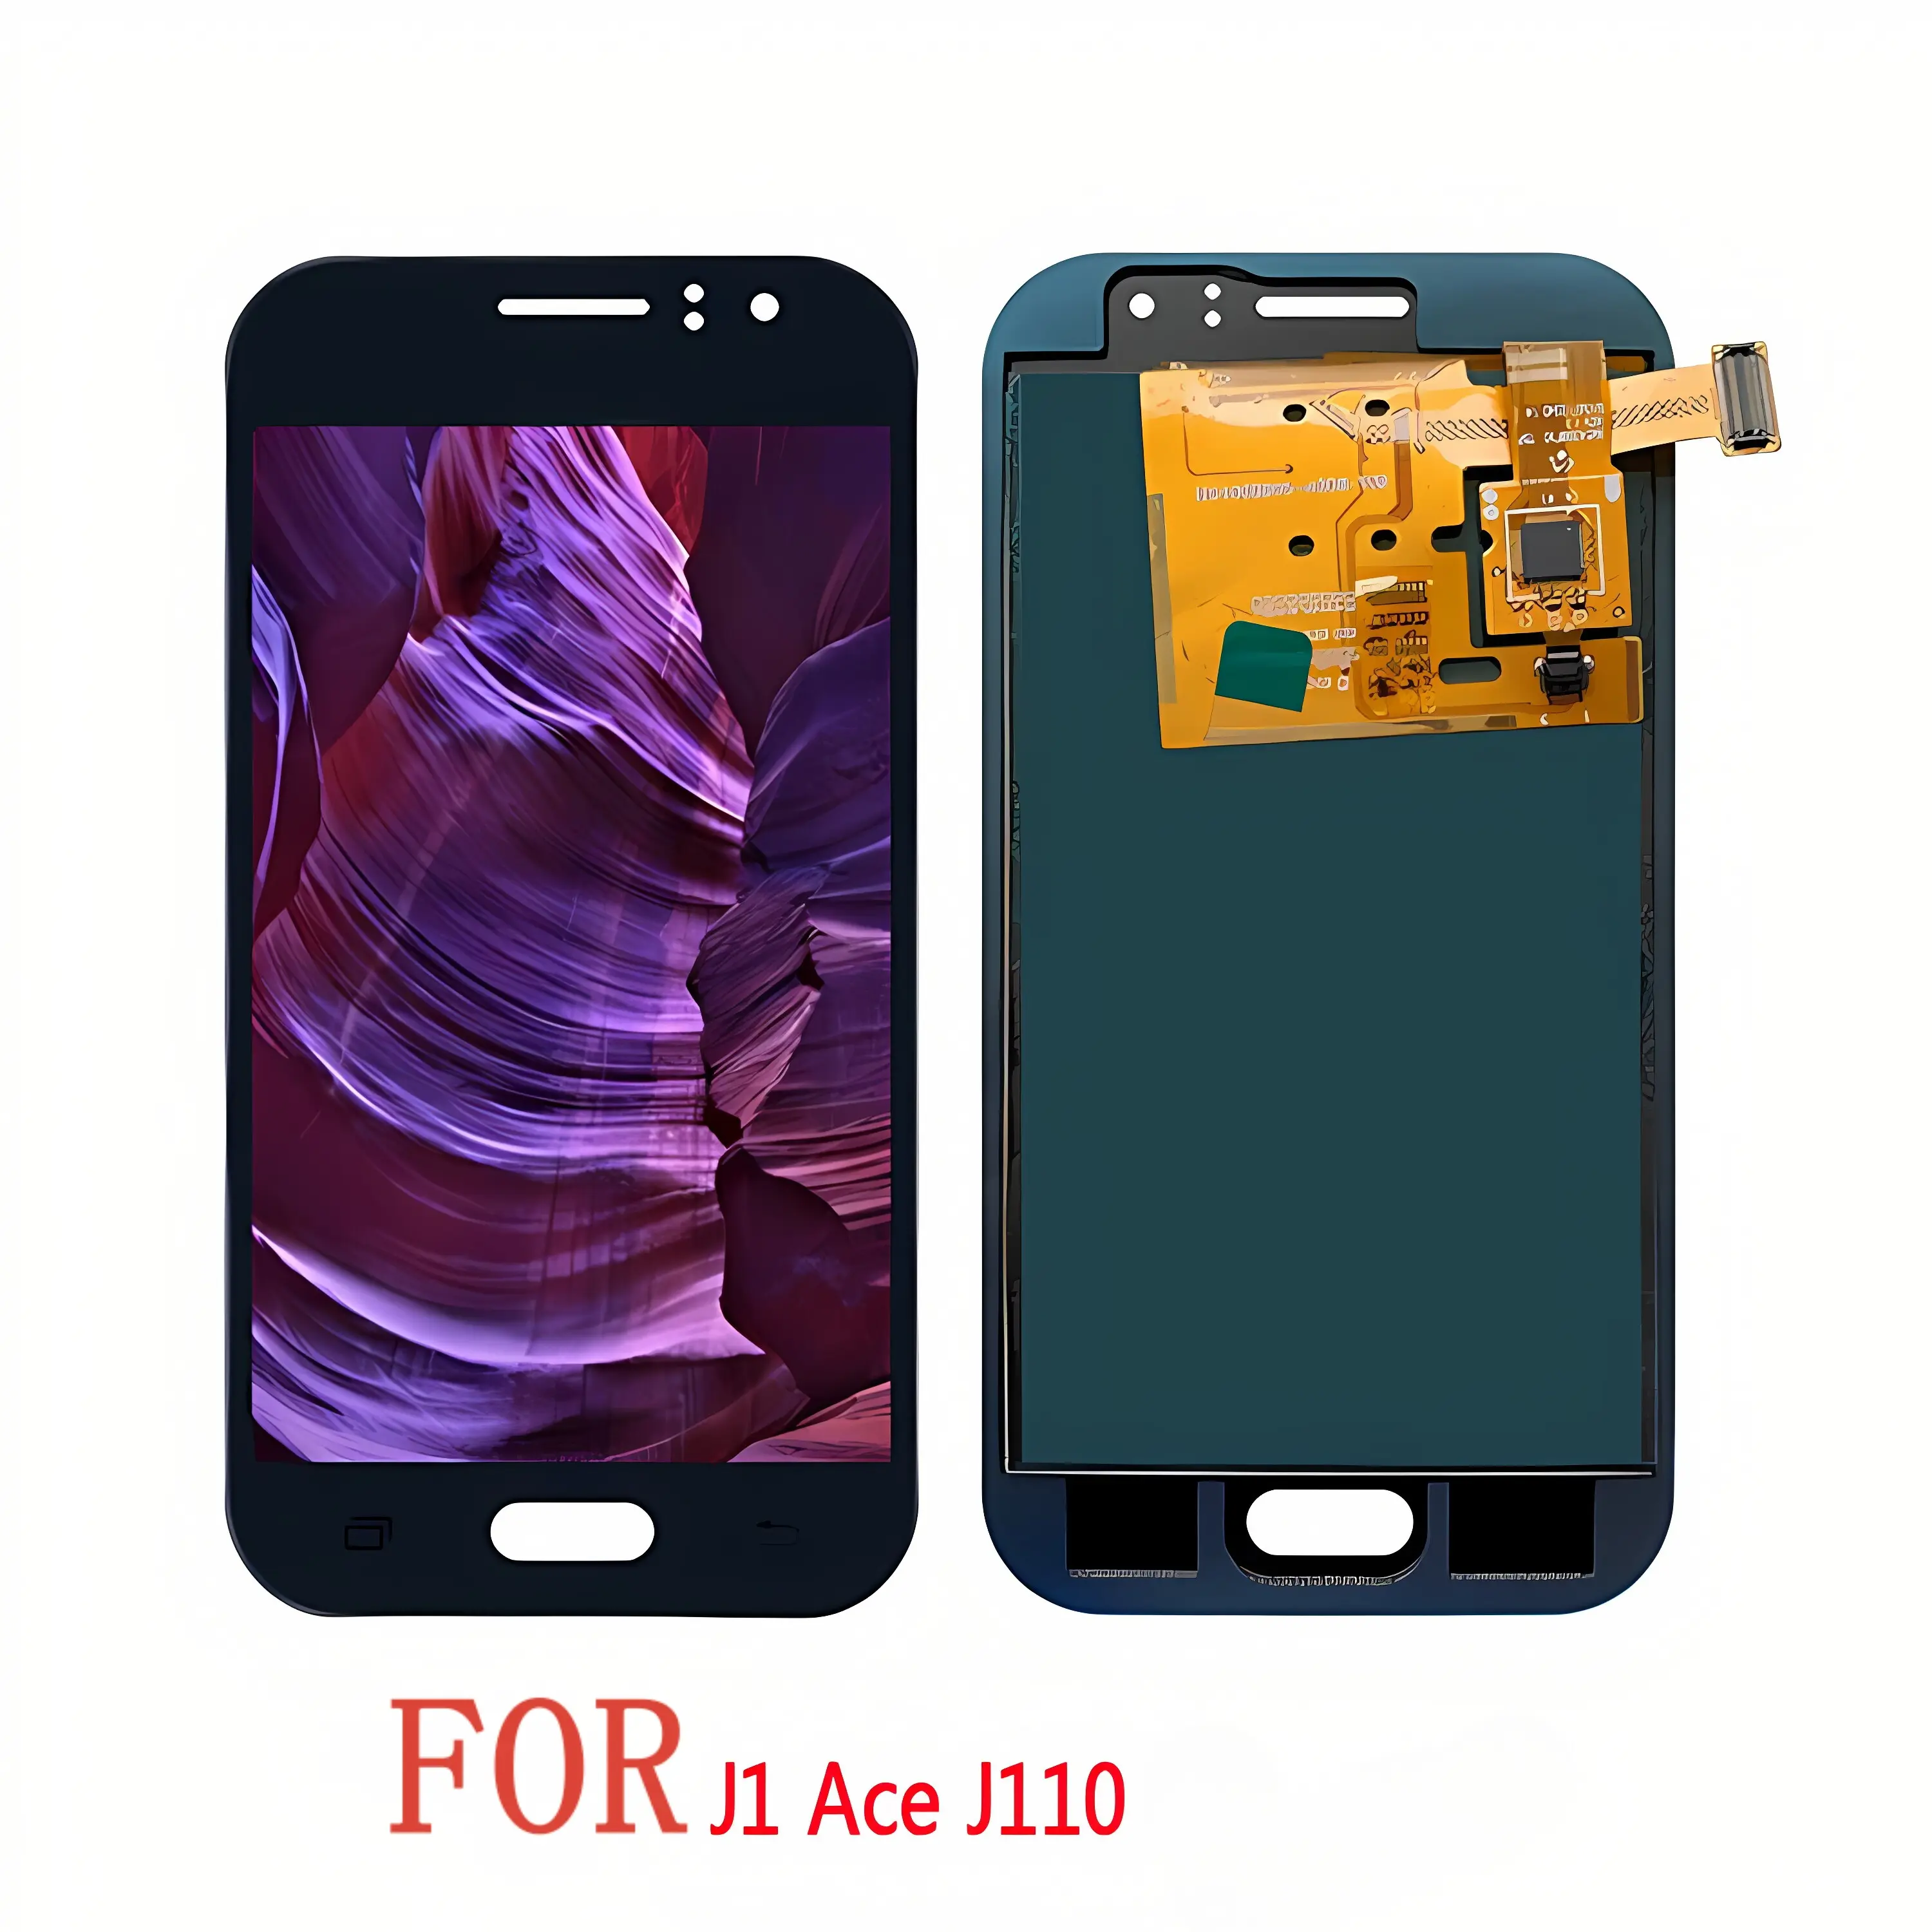 Reemplazo de pantalla LCD de teléfono de venta directa de fábrica con garantía de pantallas completas para Samsung Galaxy J1 Ace j110